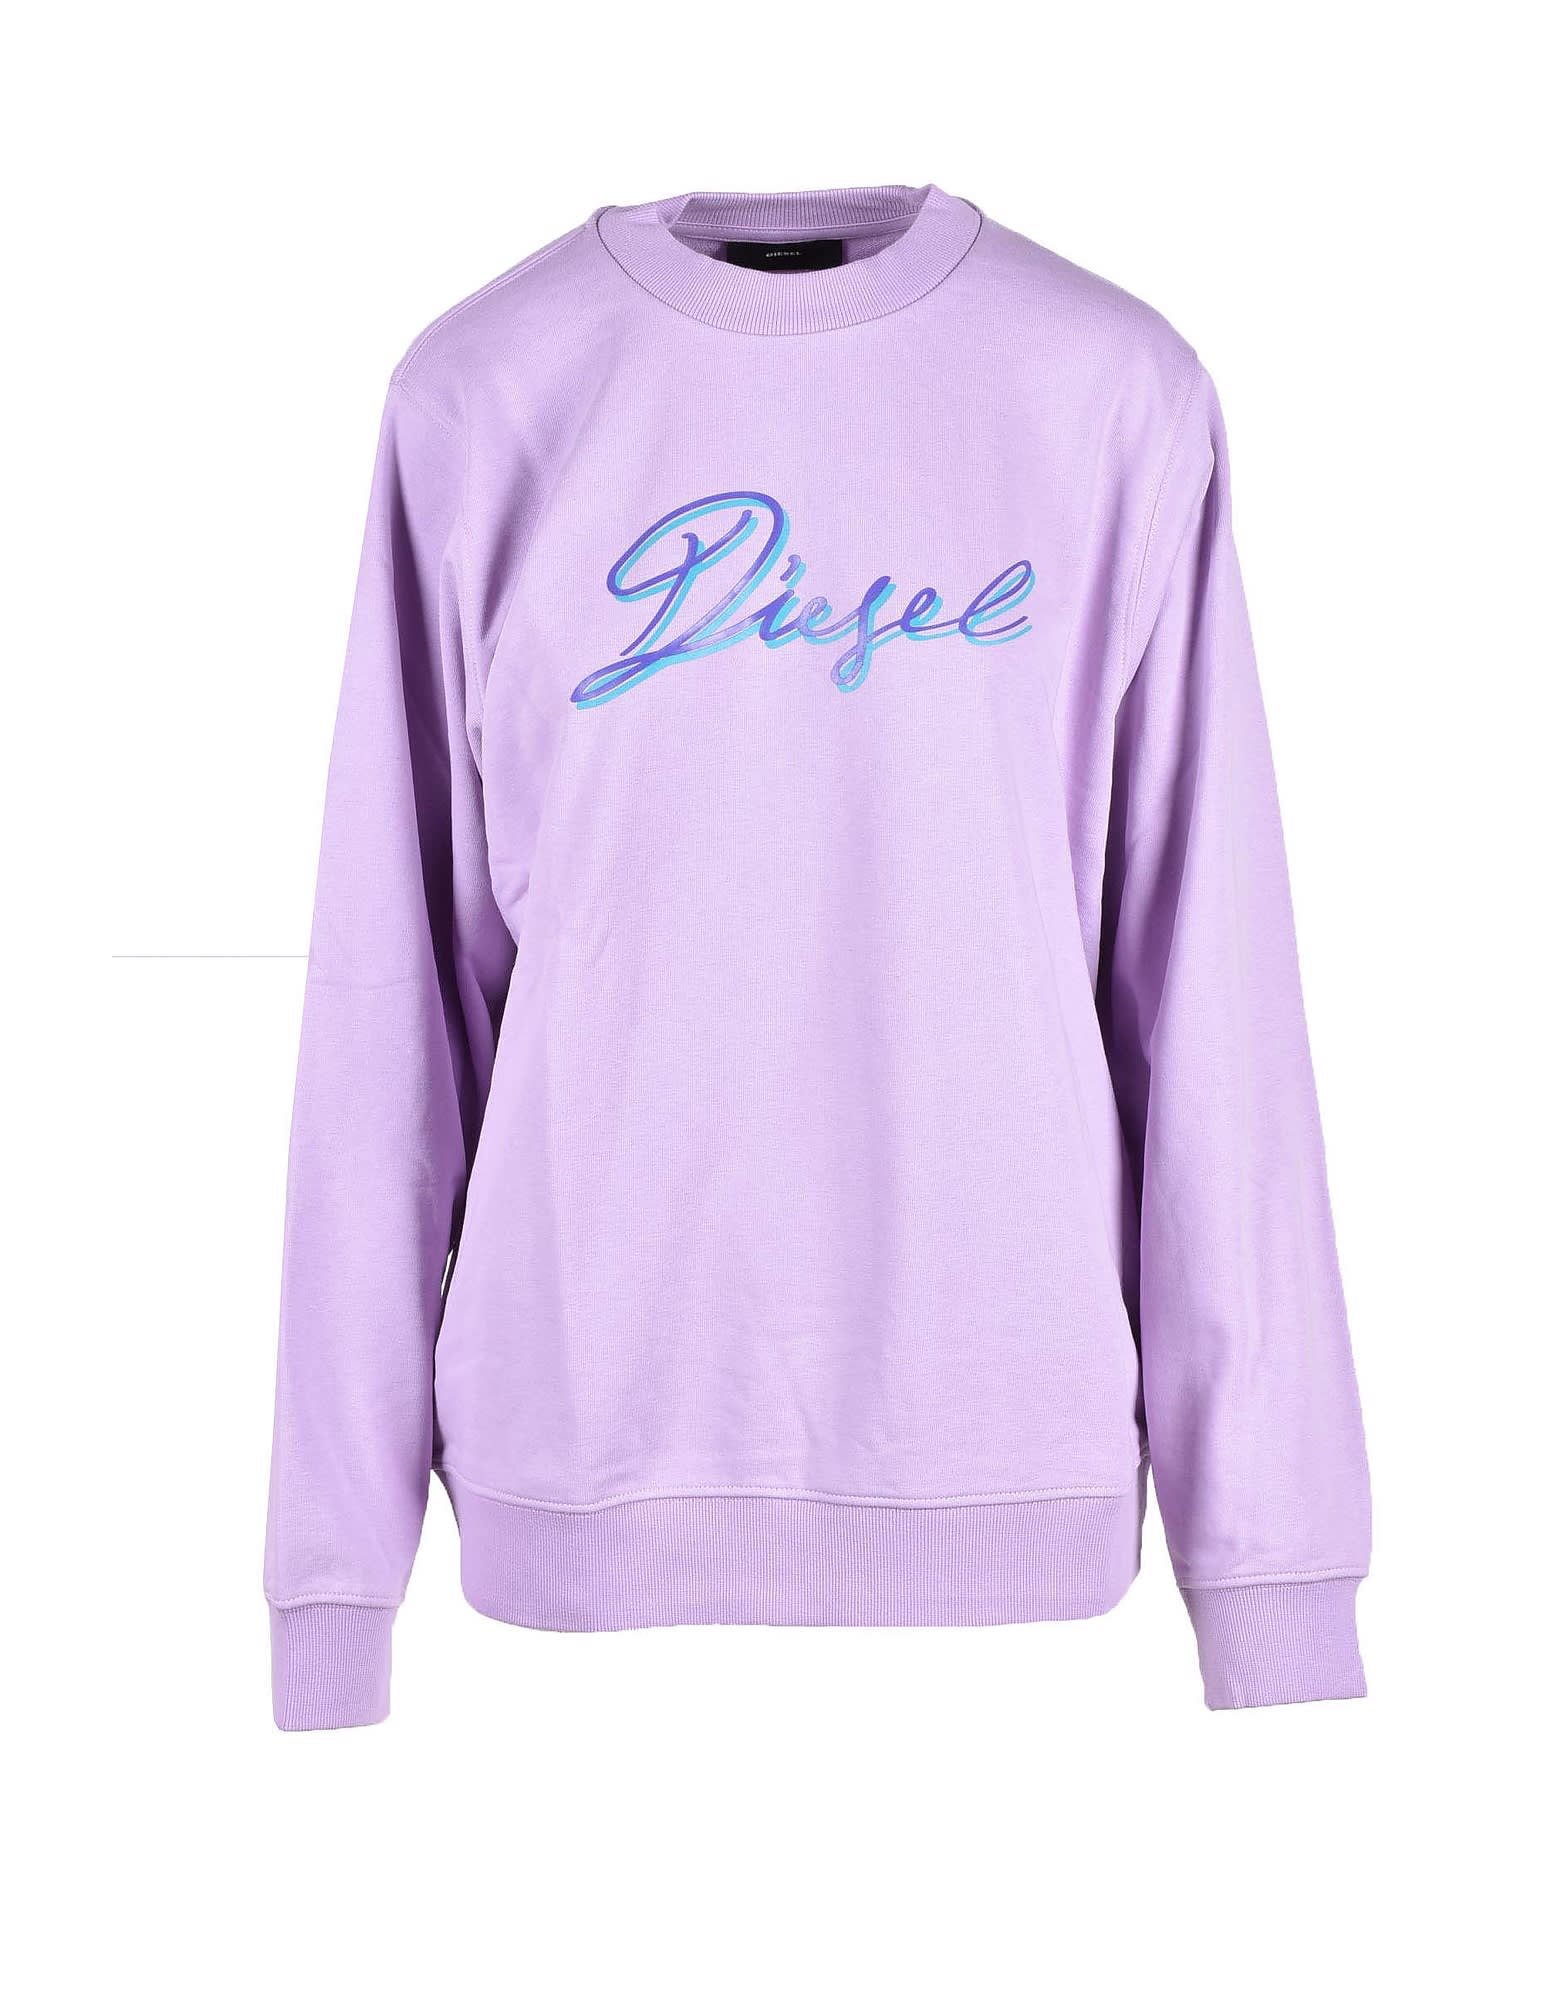 Diesel Womens Lilac Sweatshirt